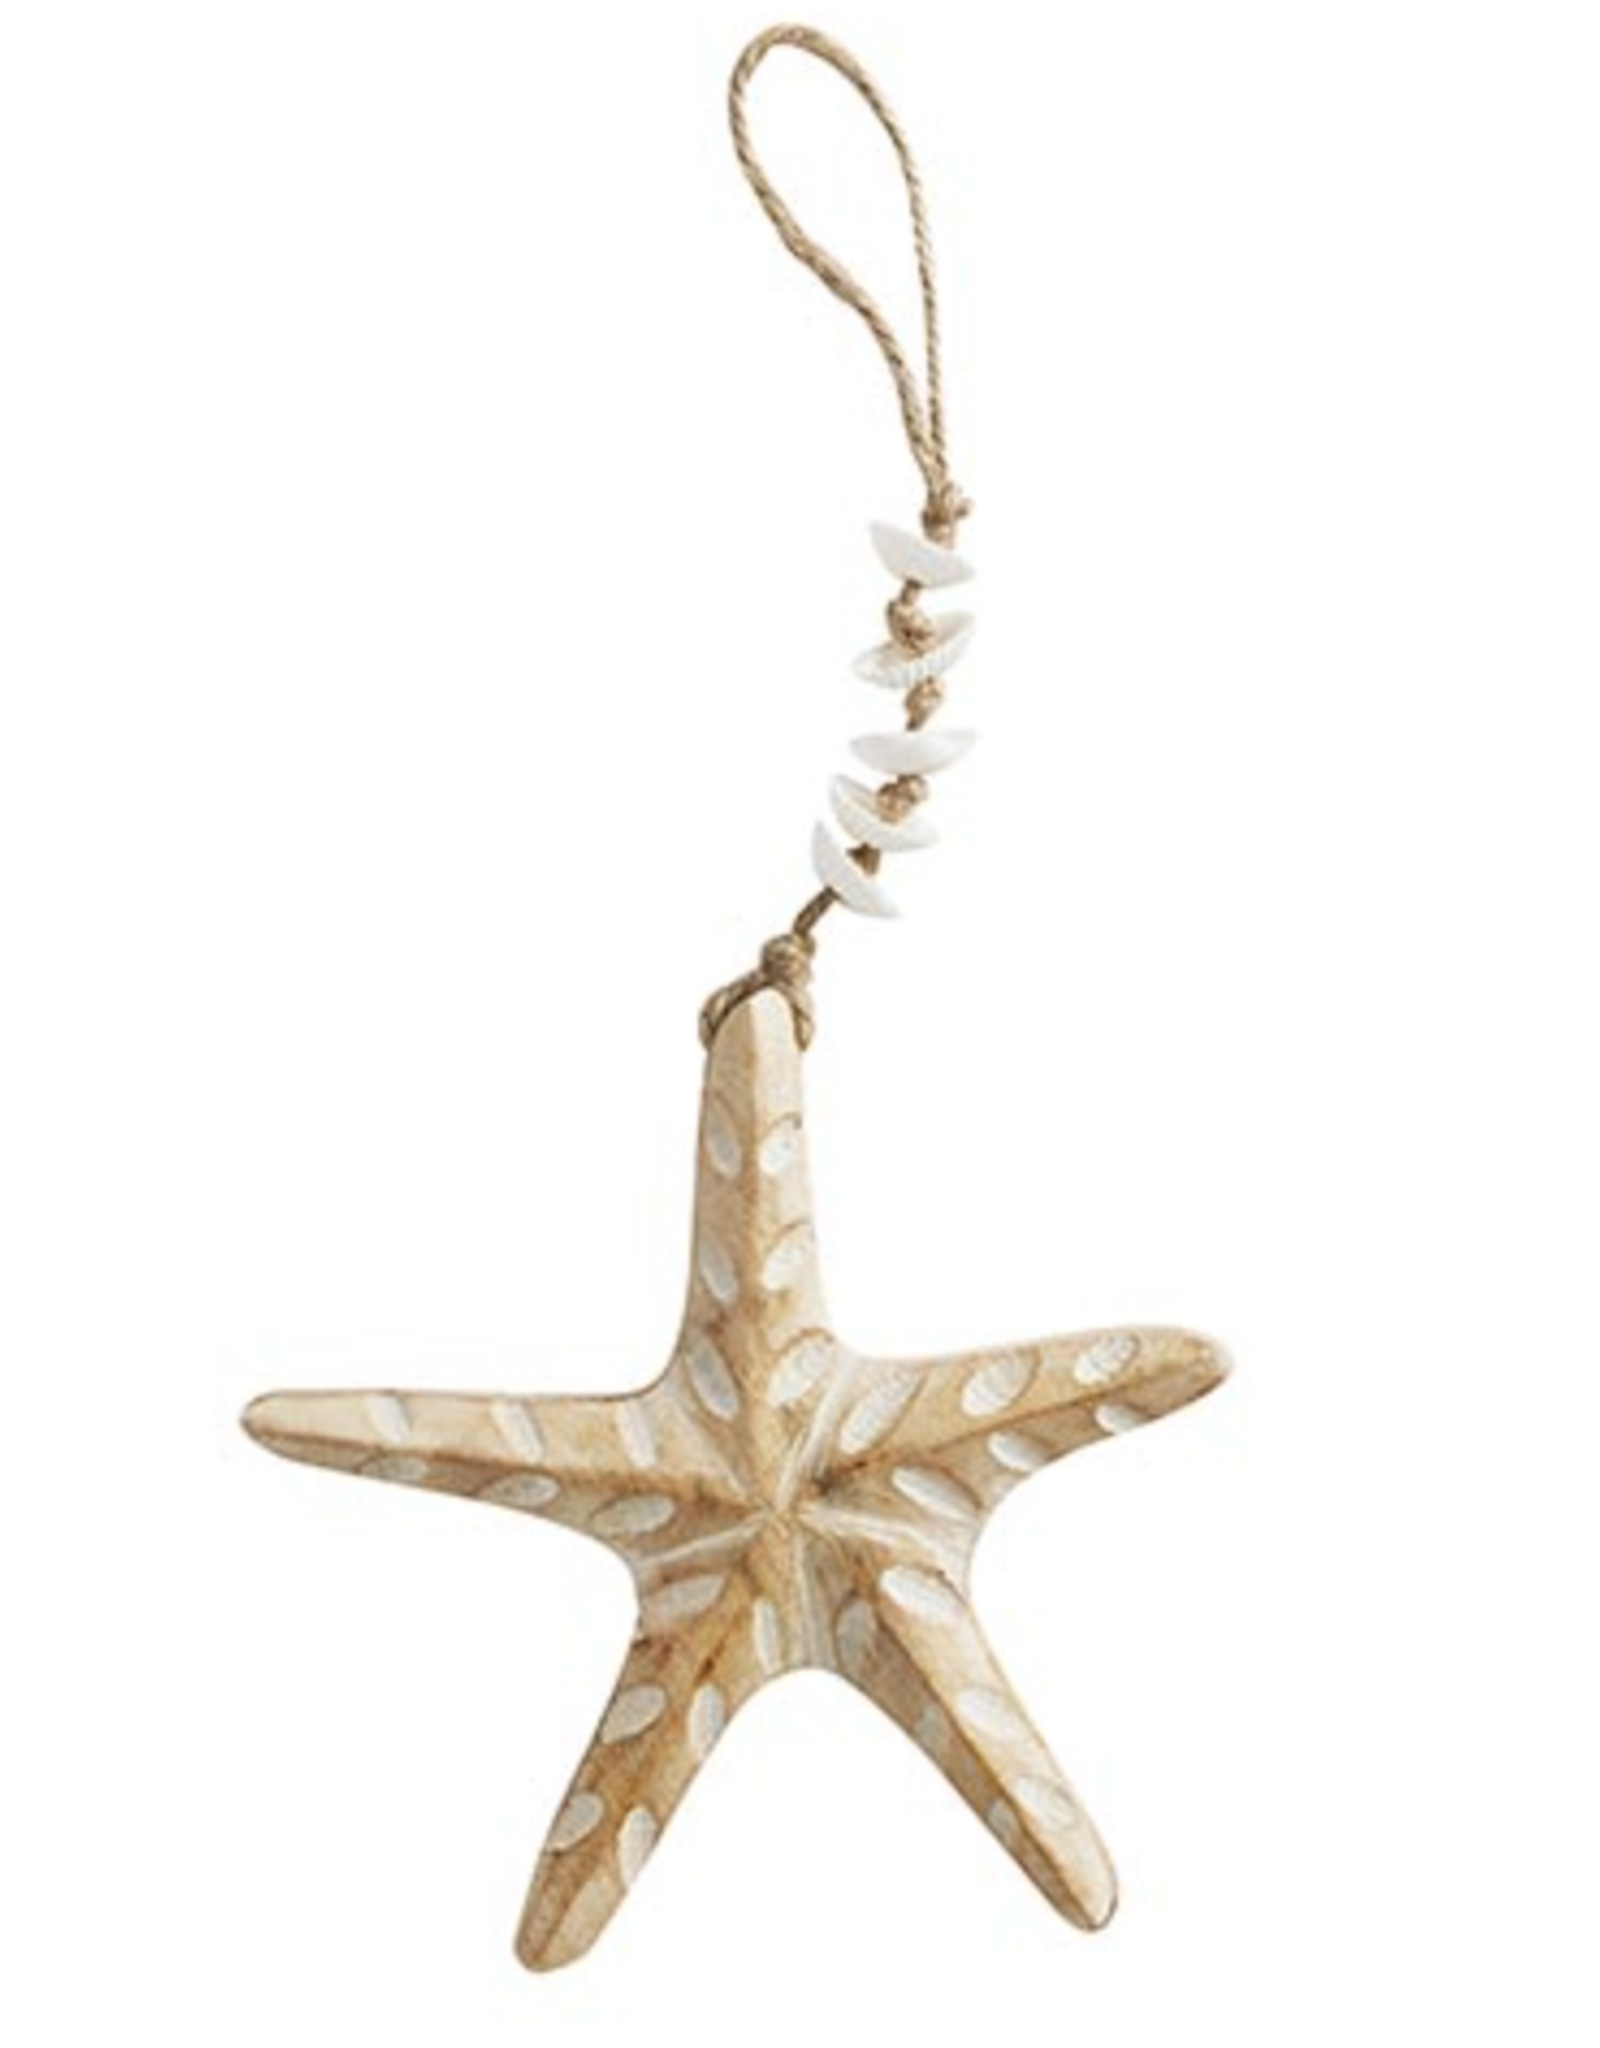 47 &Main Starfish Hanging Decor